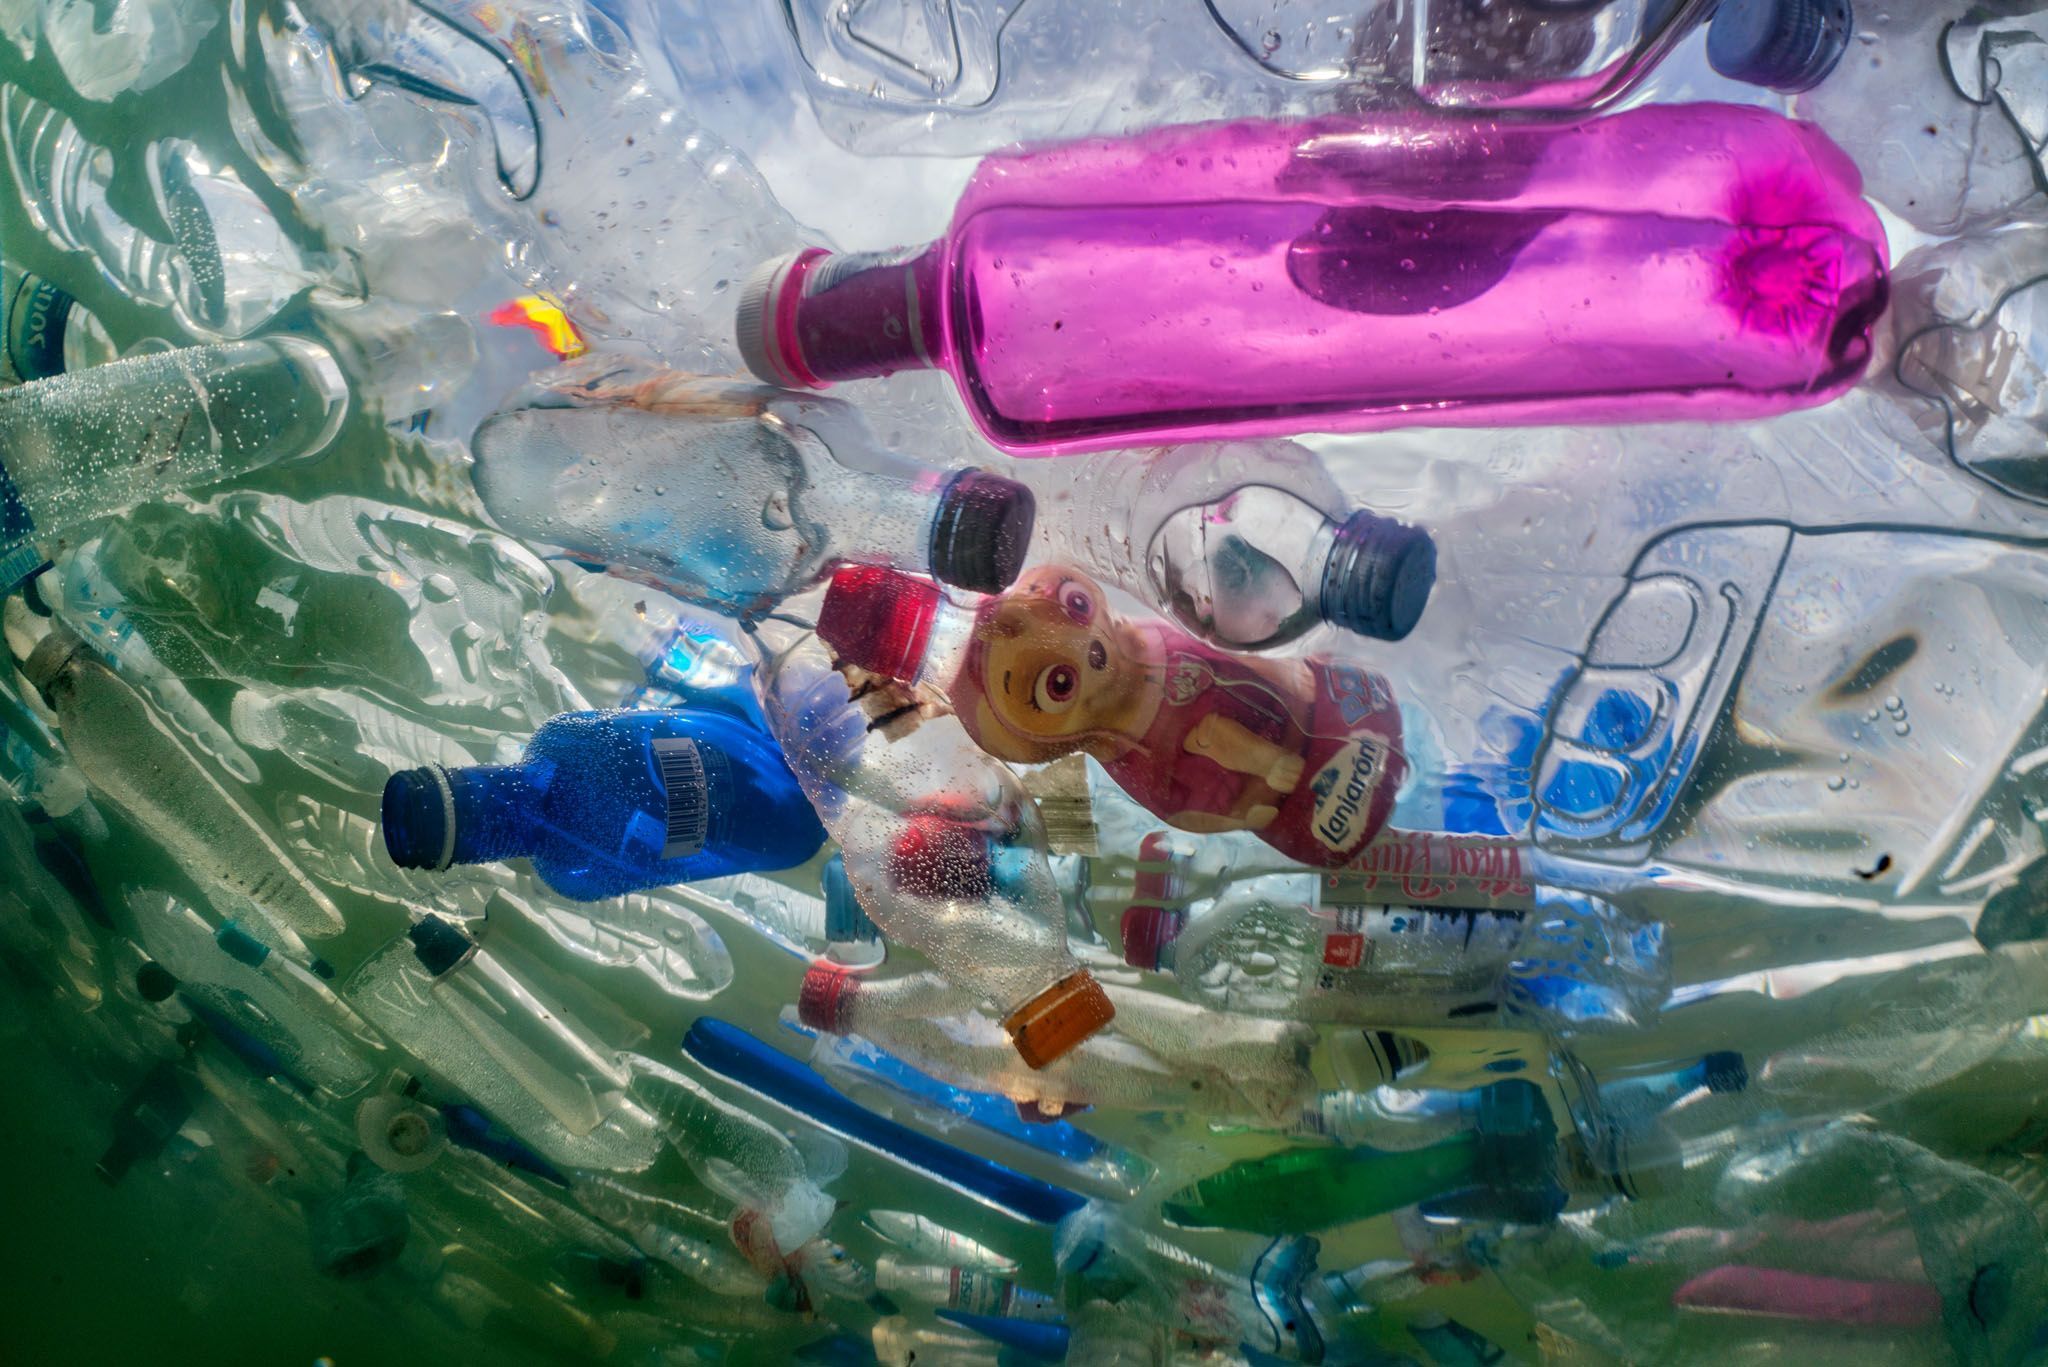 Humaan operatie speling Plastic: van wondermateriaal tot wereldprobleem